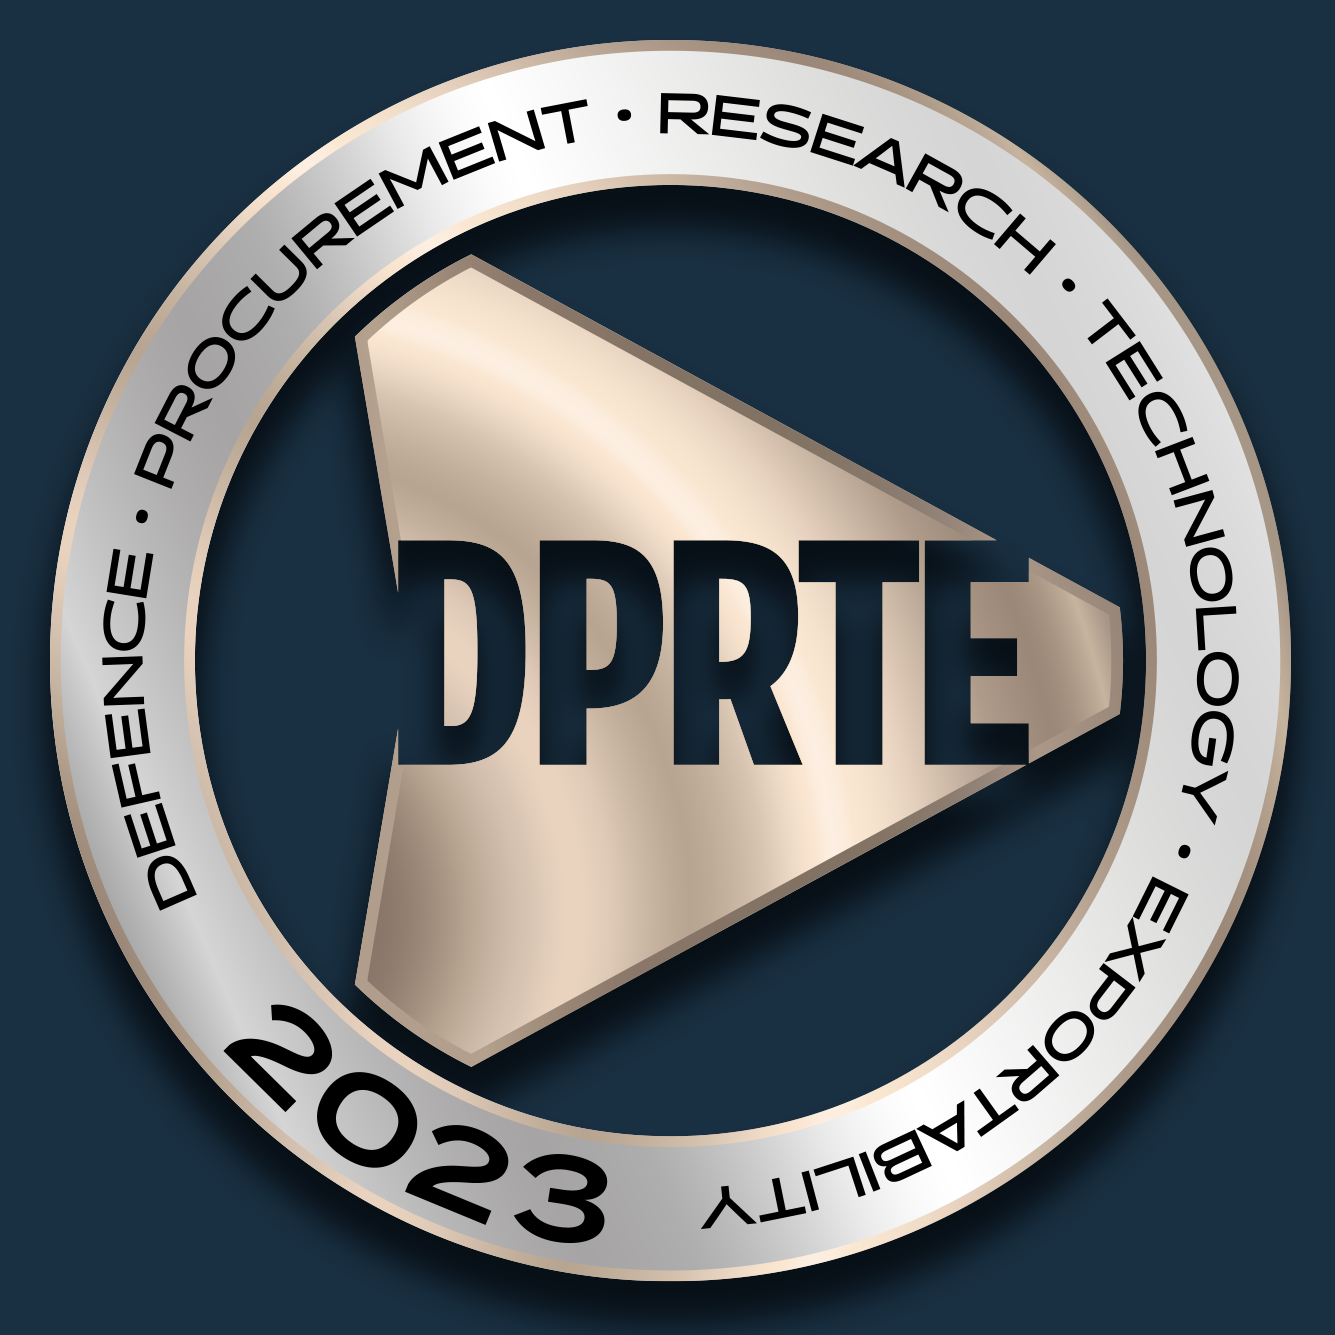 DPRTE23 logo.jpg